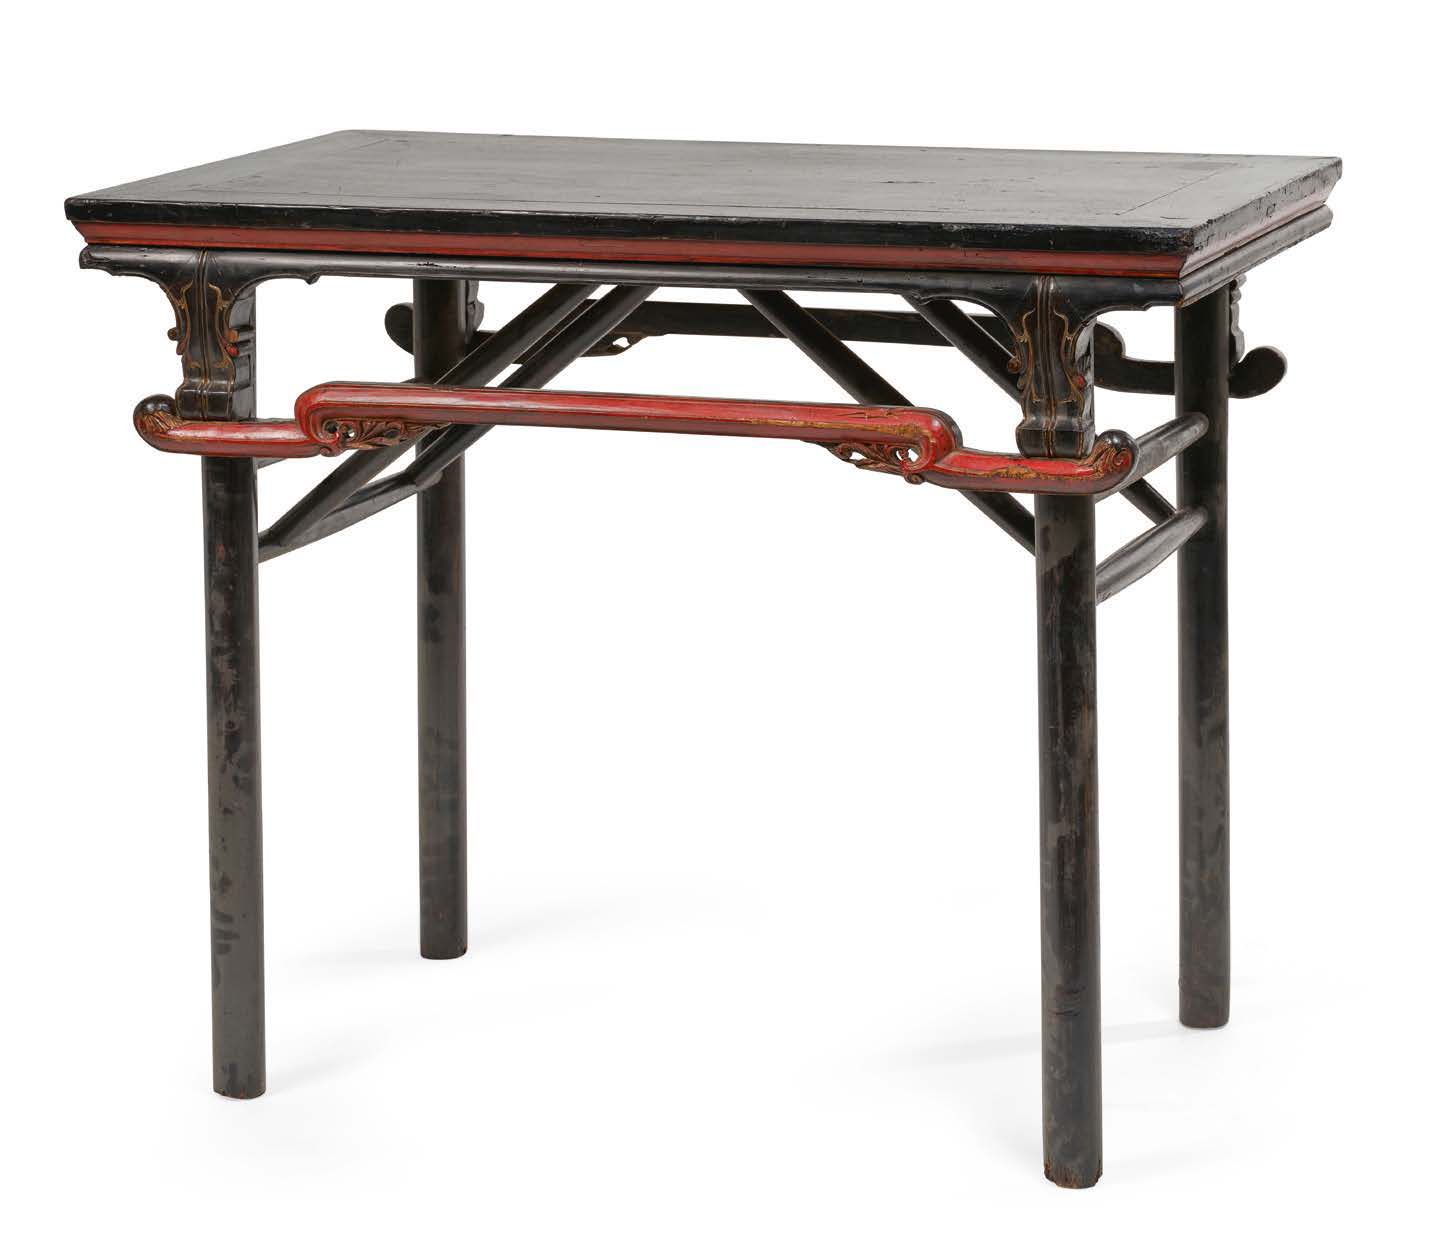 CHINE XIXe - XXe SIÈCLE 中国 19-20世纪
巧妙的黑红漆木折叠桌